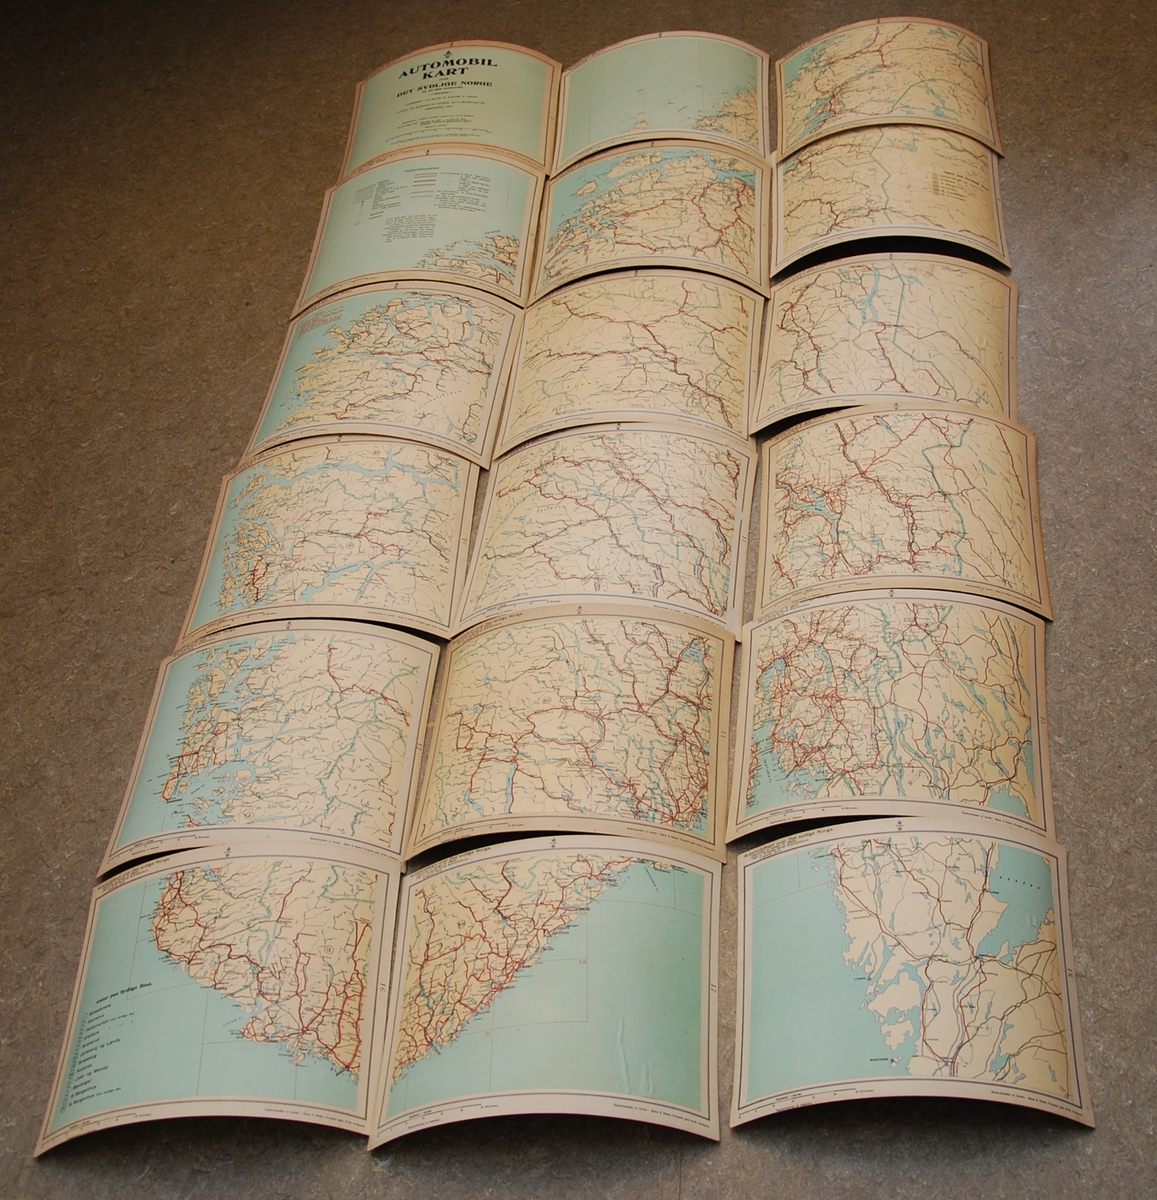 18 kartblad klebet på kartong. Utgitt 1915.
De er nummerert 1 til 18 og kan legges greitt ut slik fra nord til syd:
 1  2  3
 4  5  6
osv.
16 17 18